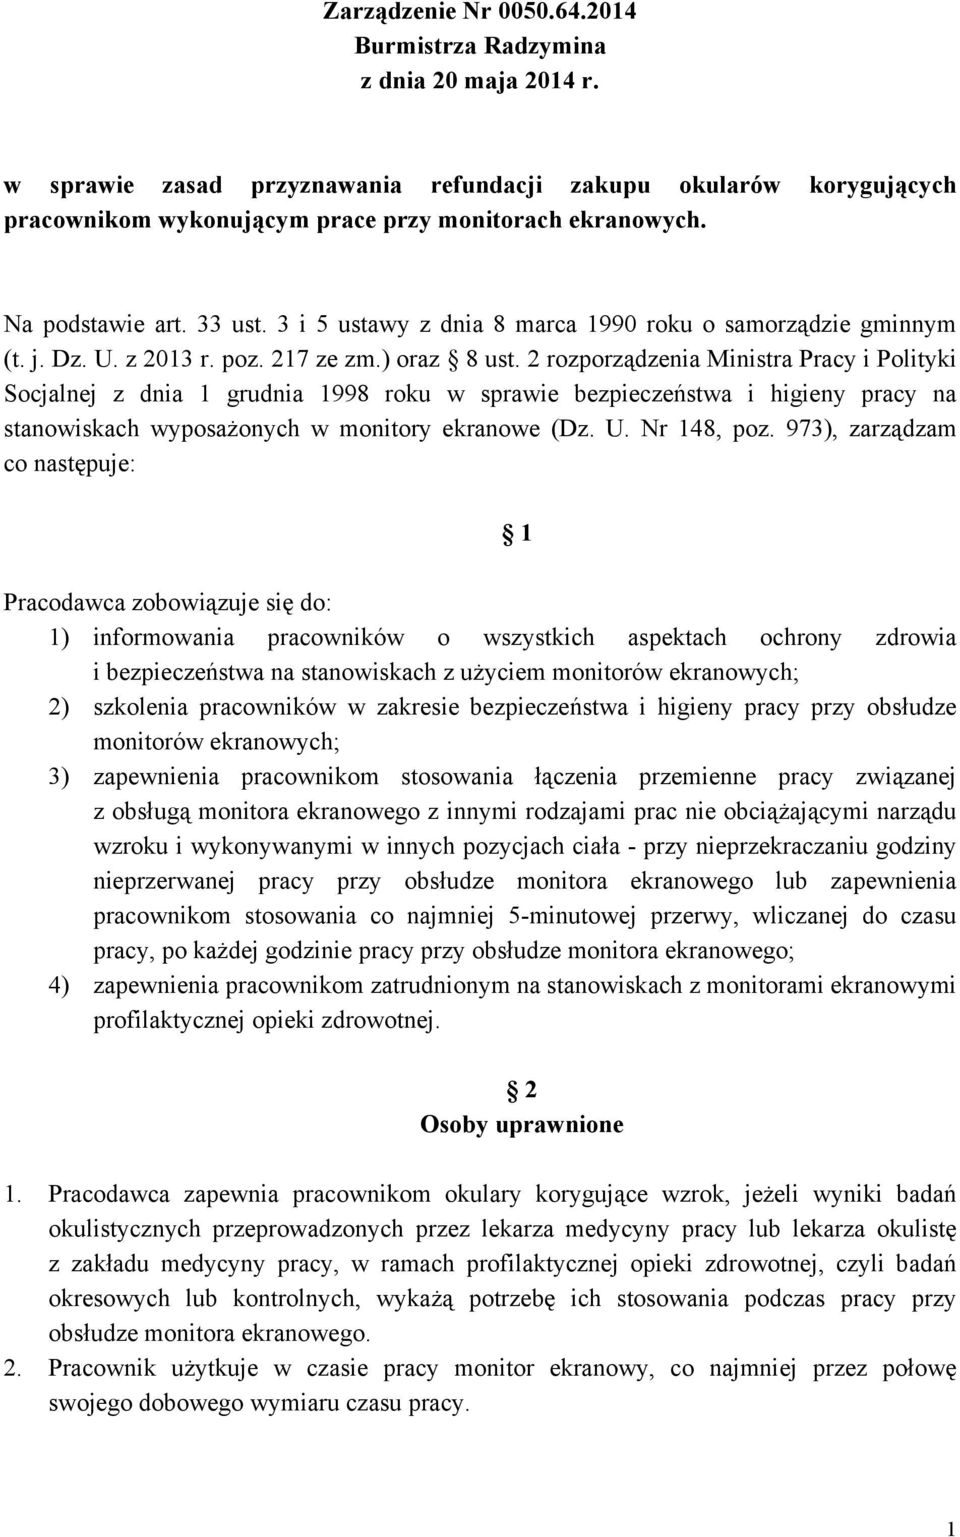 2 rozporządzenia Ministra Pracy i Polityki Socjalnej z dnia 1 grudnia 1998 roku w sprawie bezpieczeństwa i higieny pracy na stanowiskach wyposażonych w monitory ekranowe (Dz. U. Nr 148, poz.